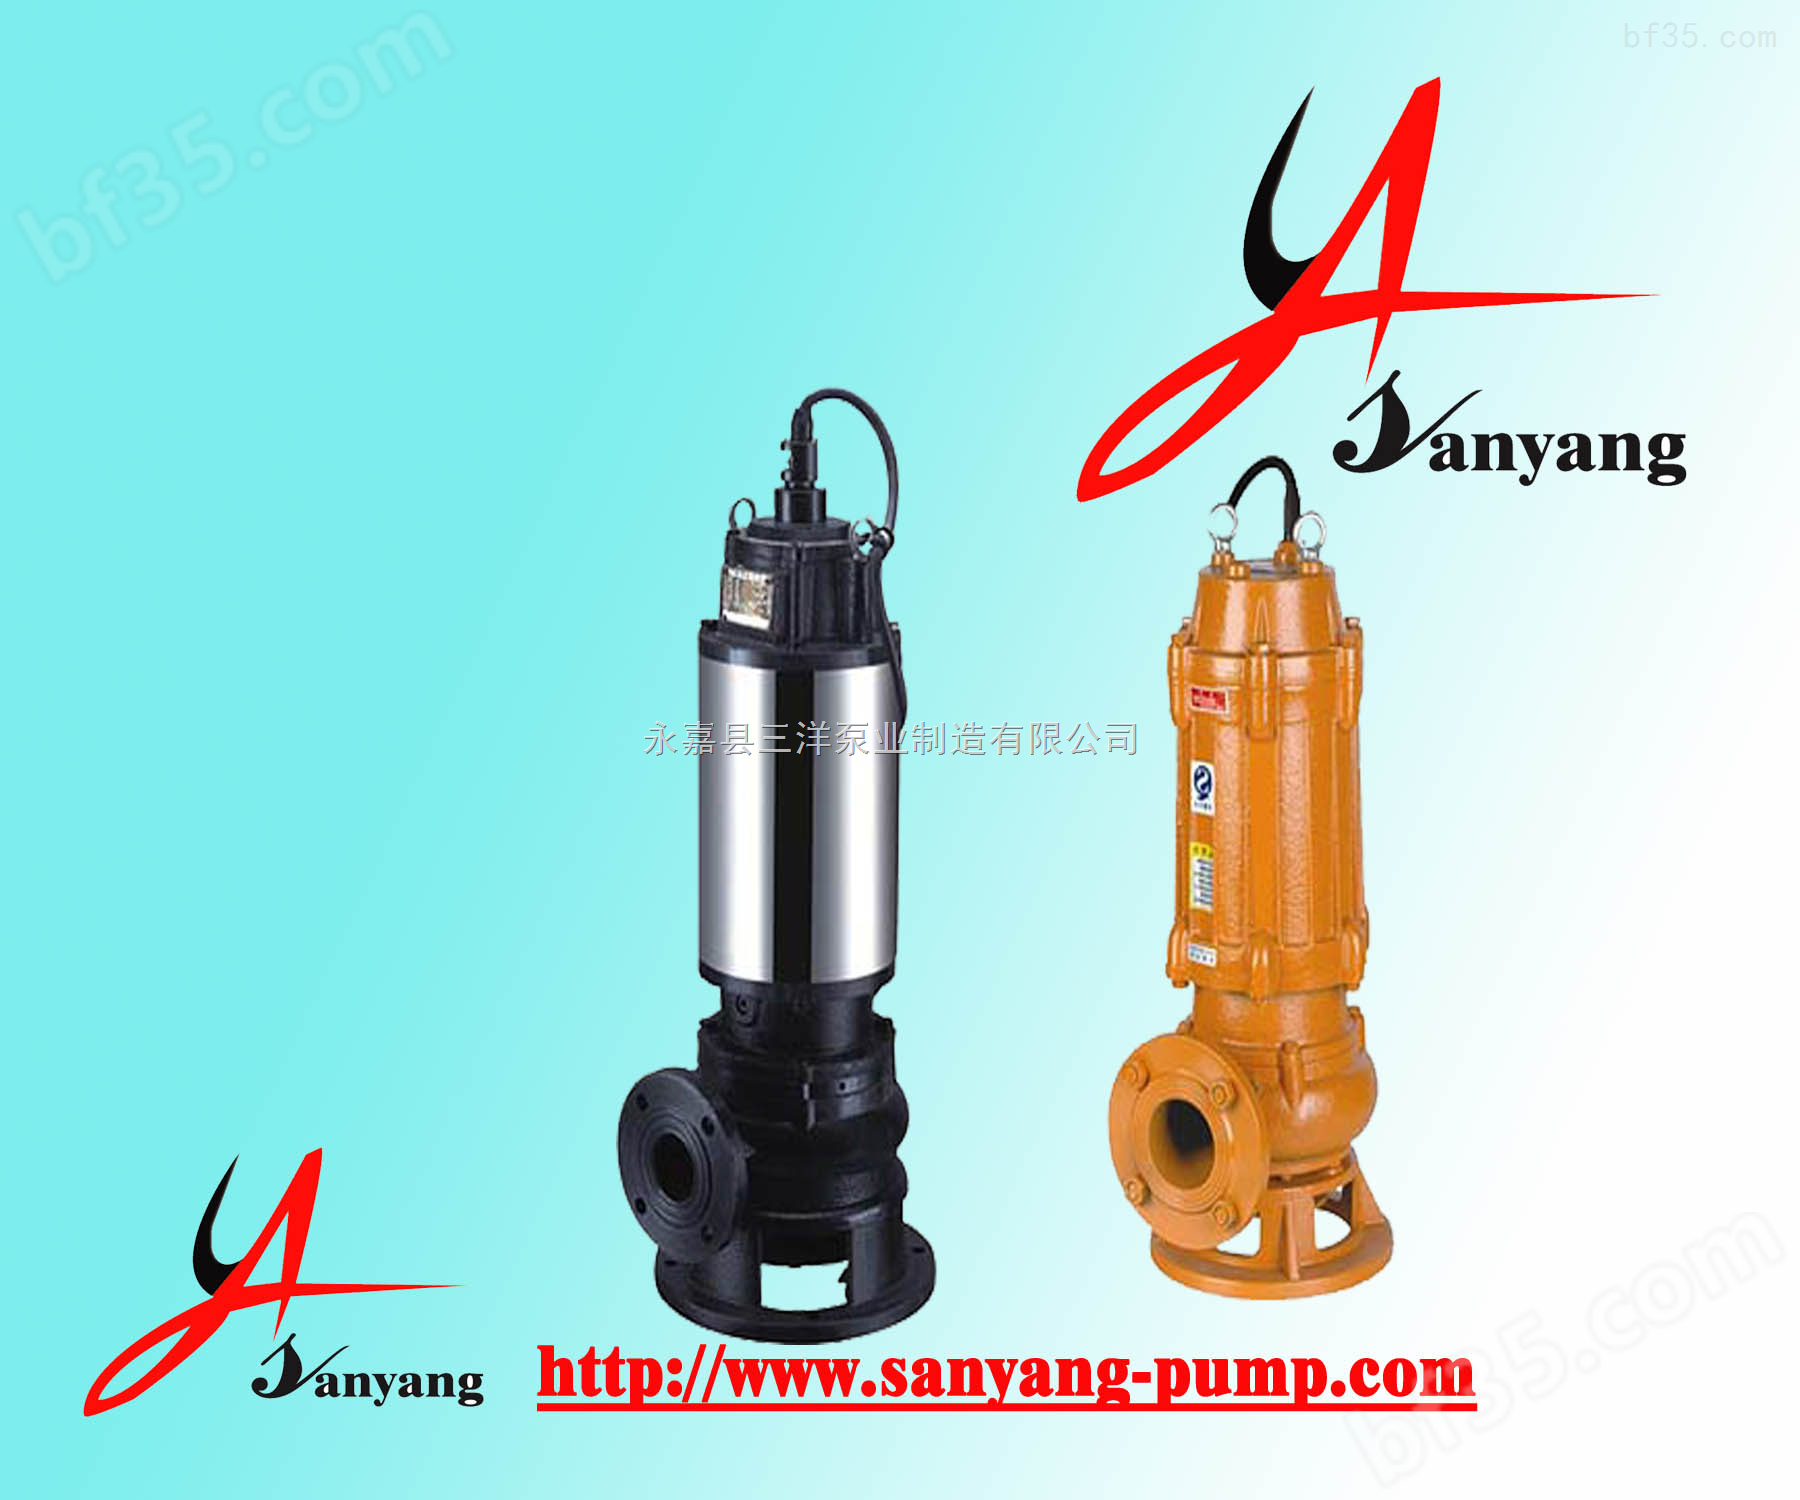 温州三洋泵业,JYWQ搅匀式排污泵,JYWQ80-40-7-1600-2.2